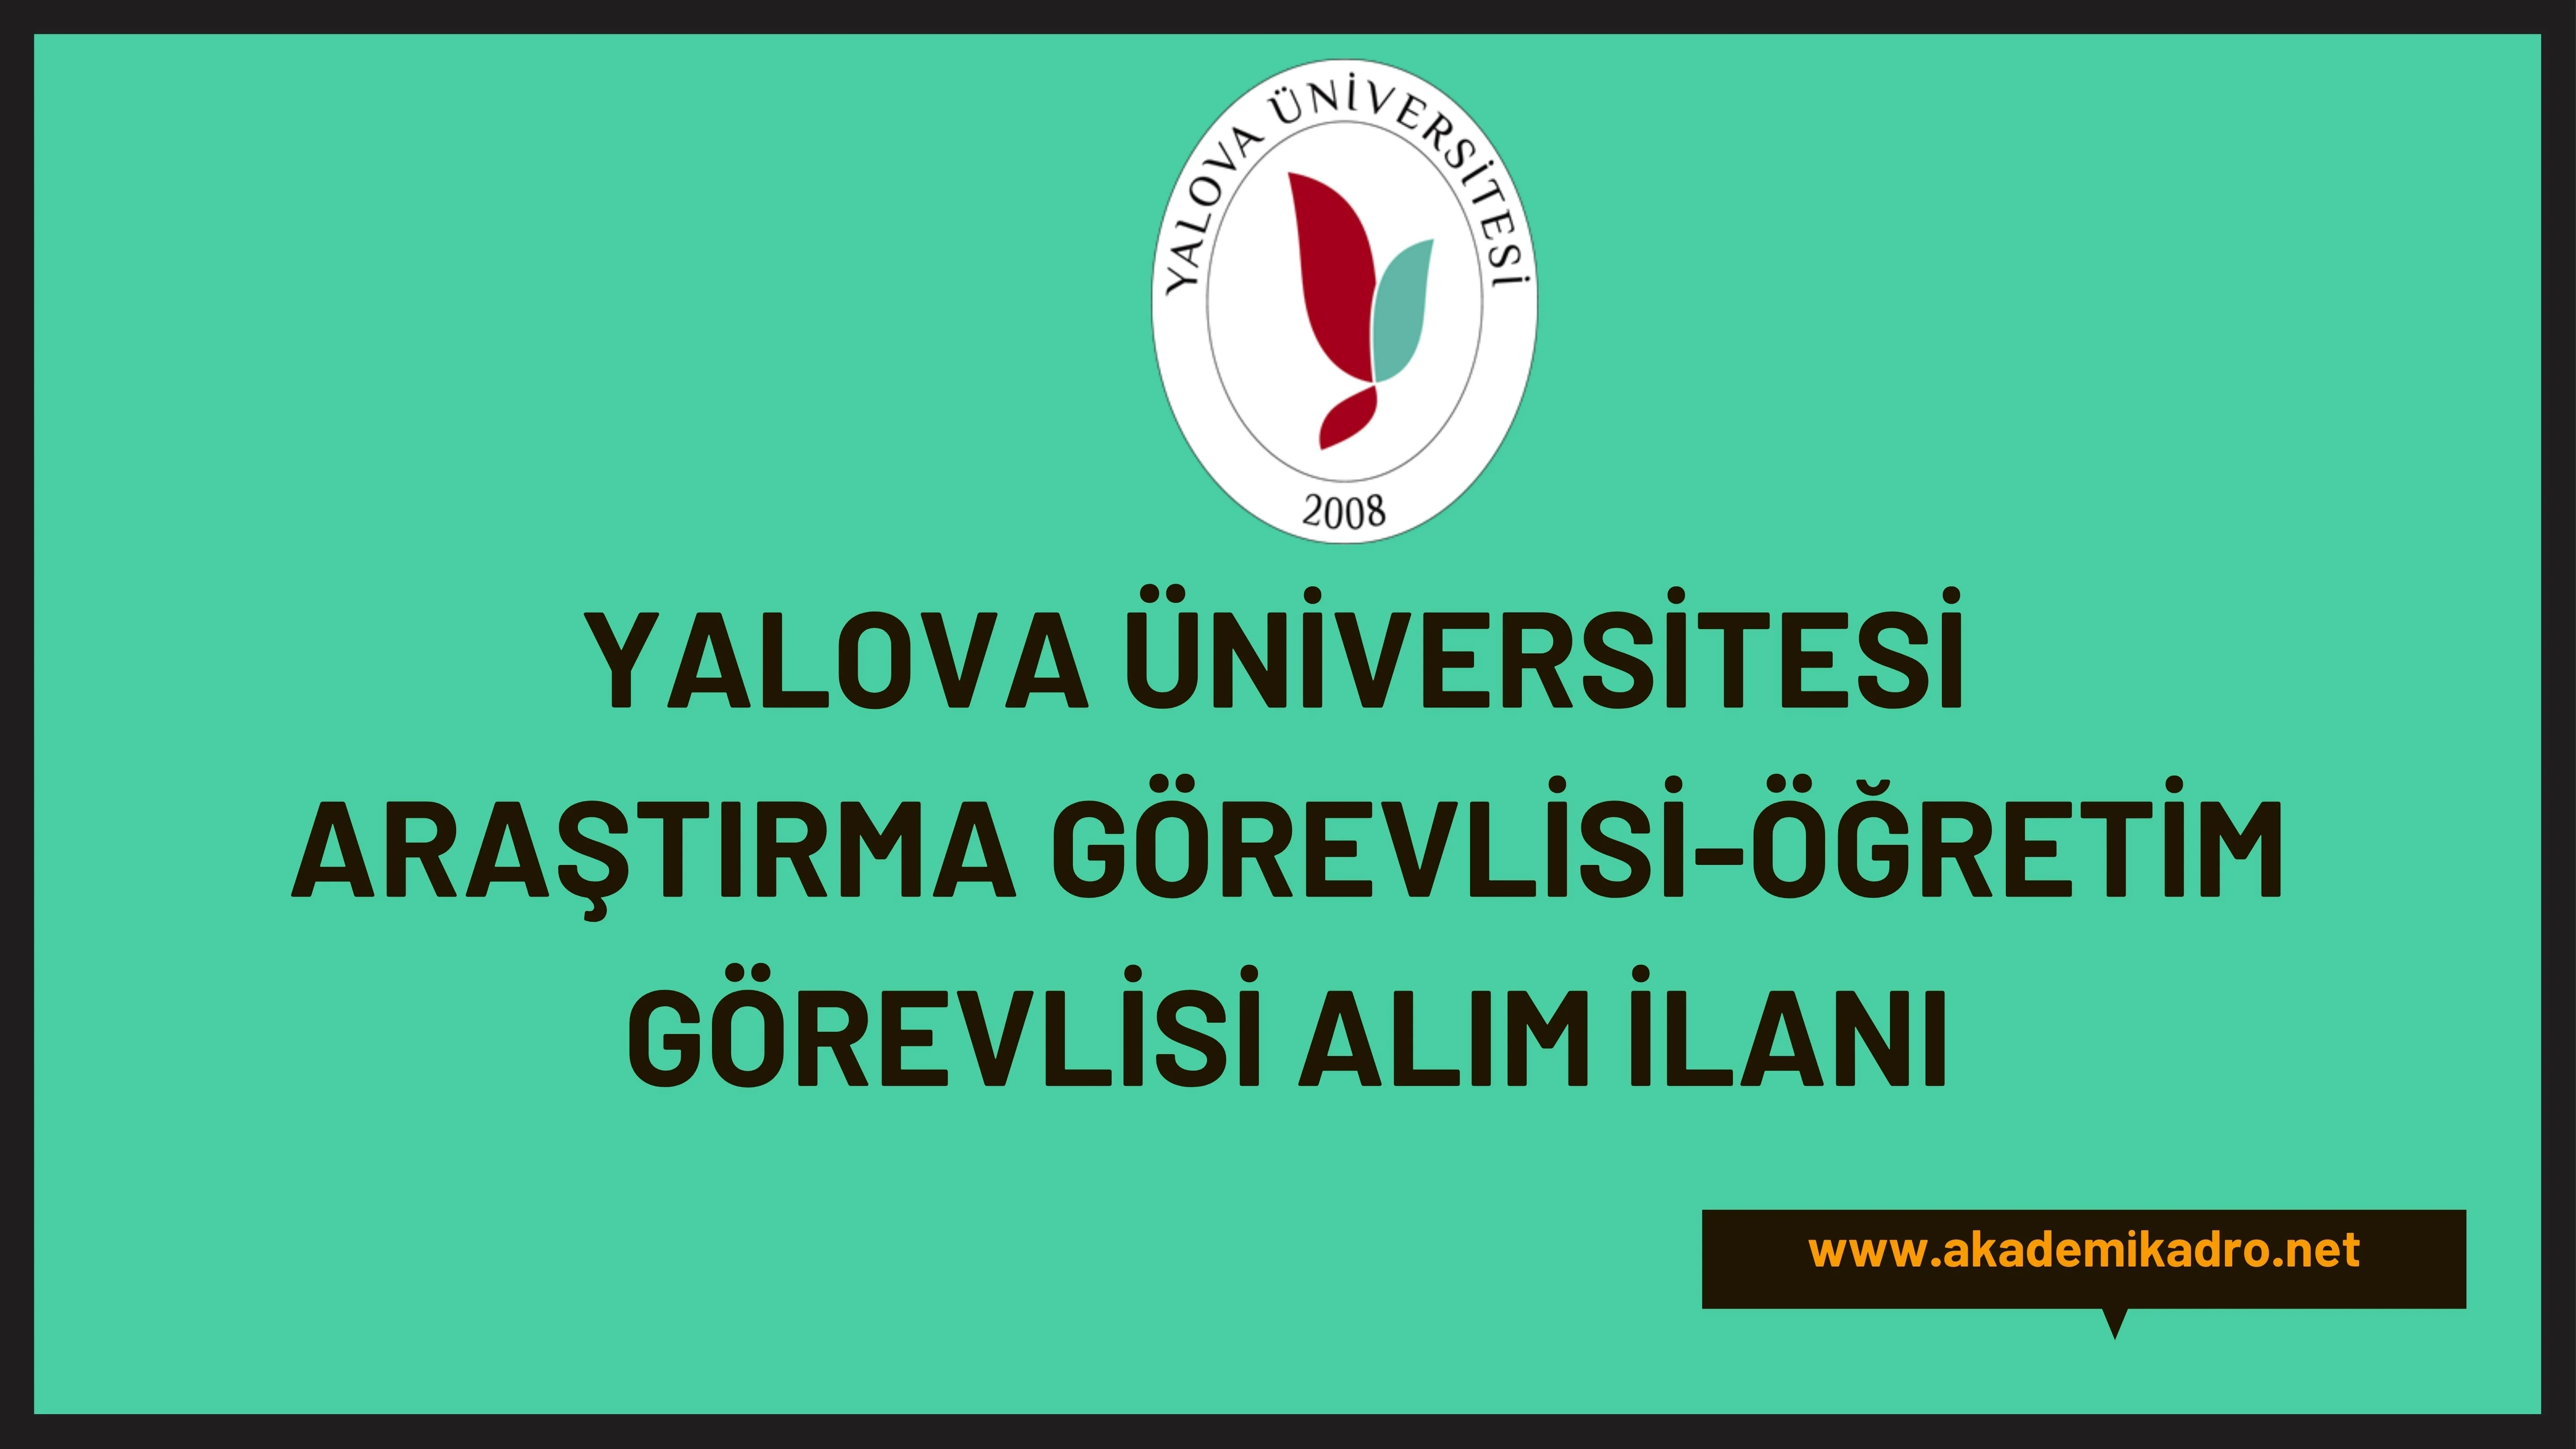 Yalova Üniversitesi 3 Araştırma görevlisi ve Öğretim görevlisi alacak. Son başvuru tarihi 5 Temmuz 2023.